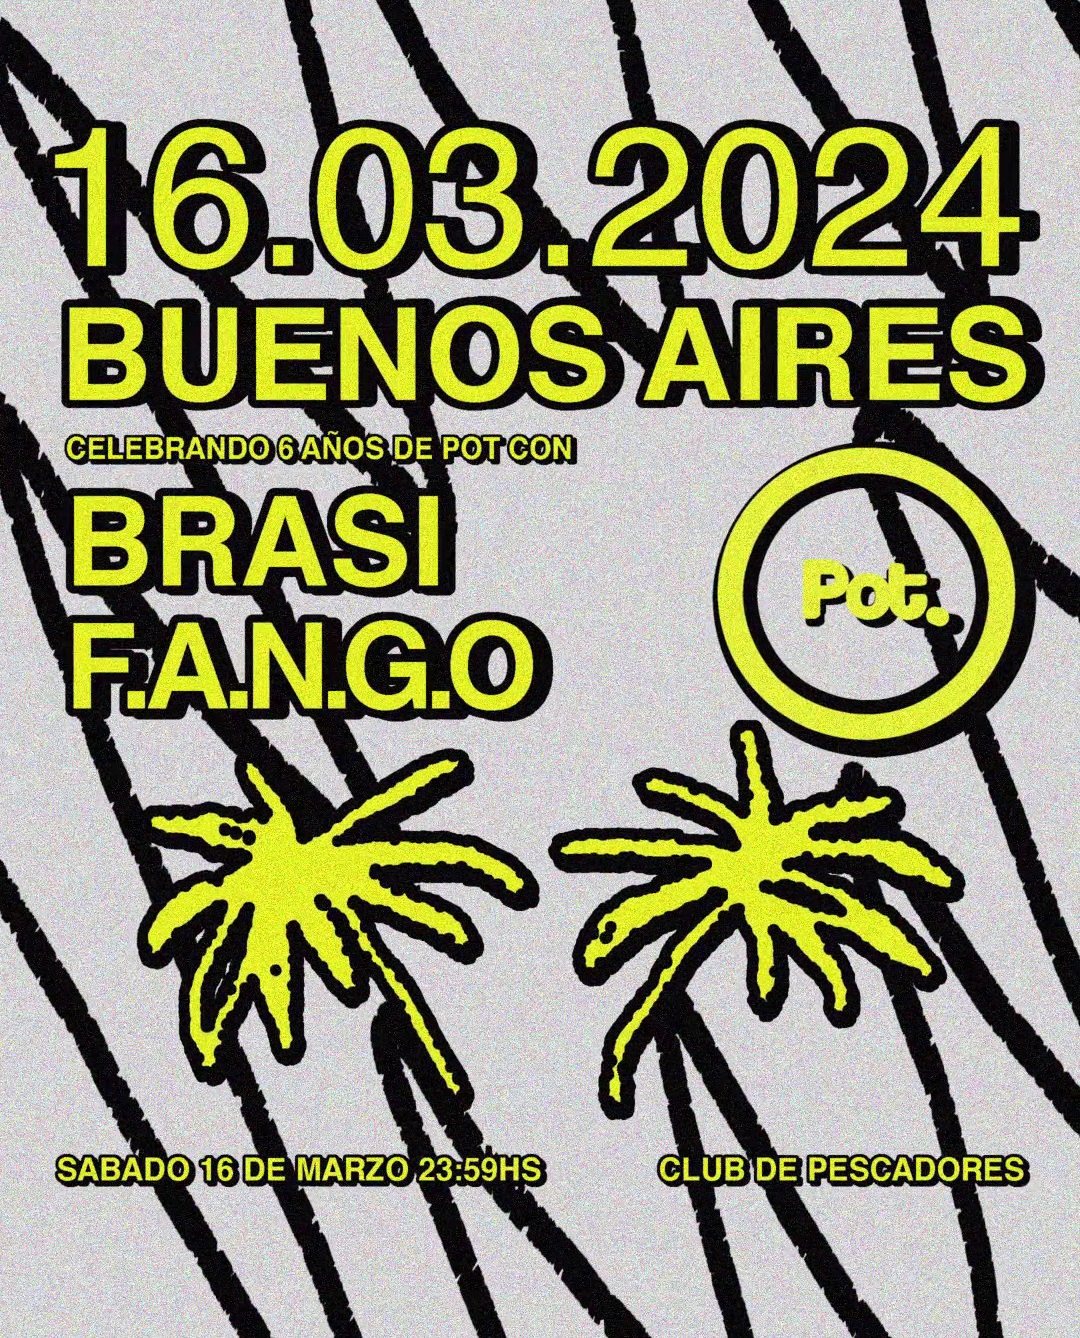 6 Years of Pot. pres: Brasi & F.A.N.G.O - Página frontal